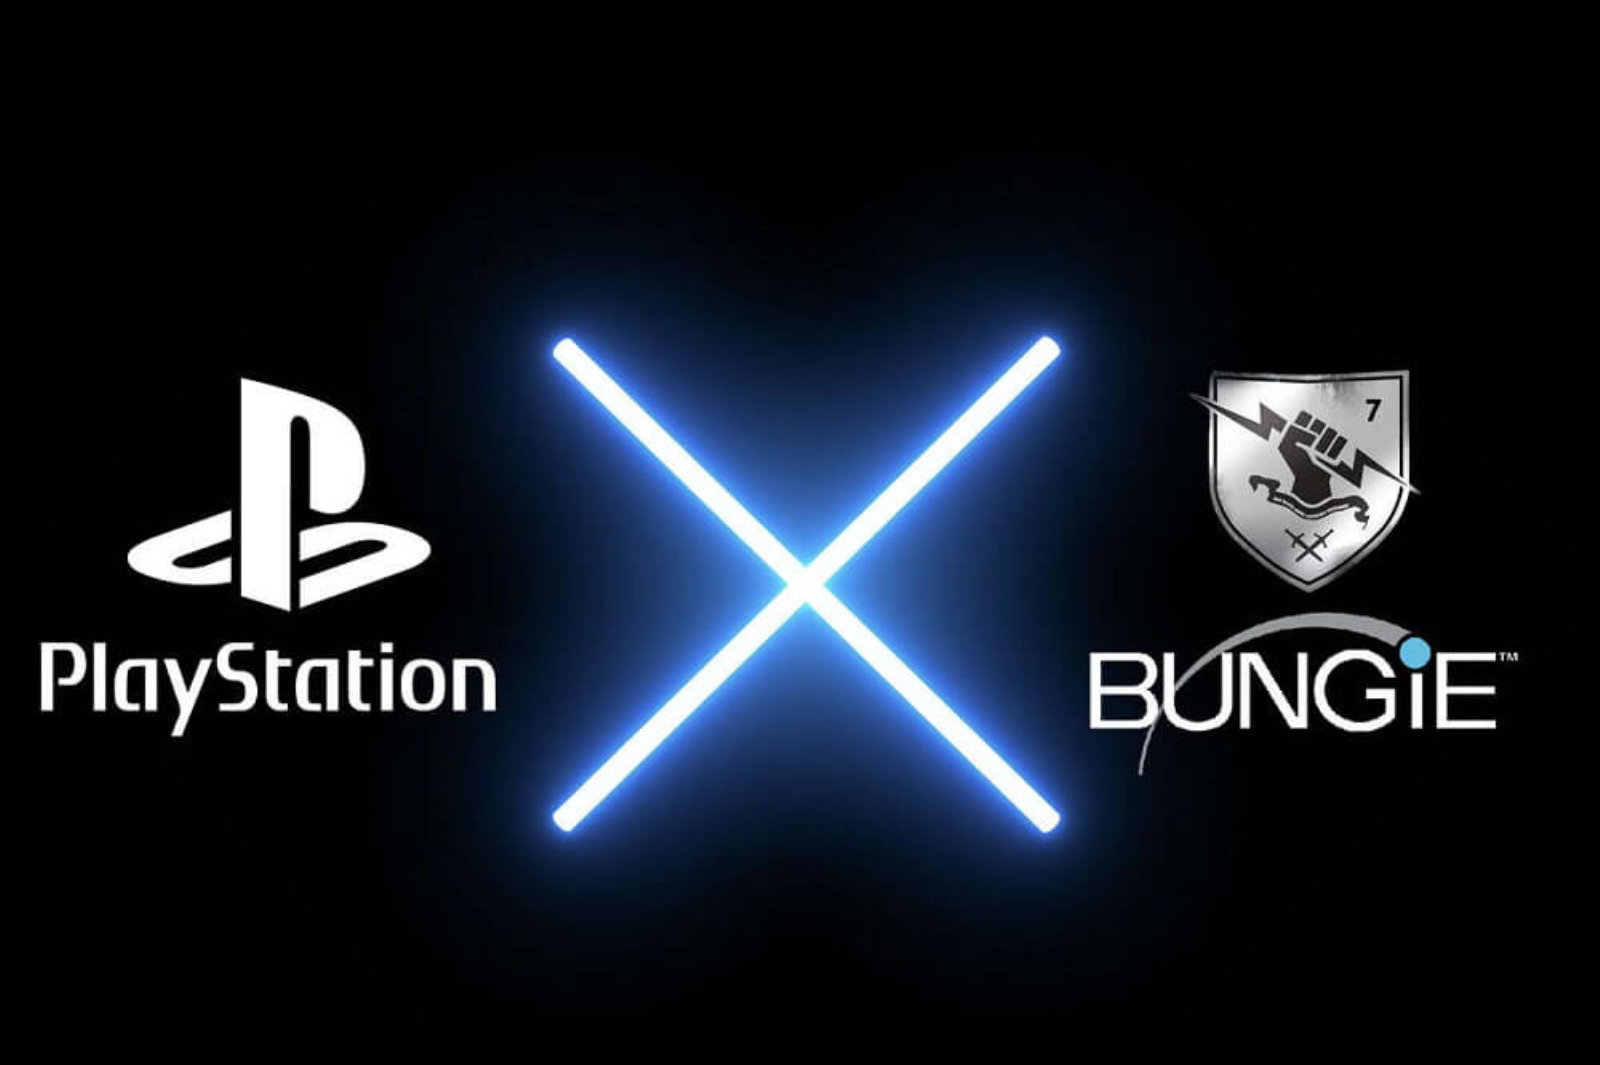 Sony PlayStation nhìn nhận Bungie như một khoản đầu tư thất bại